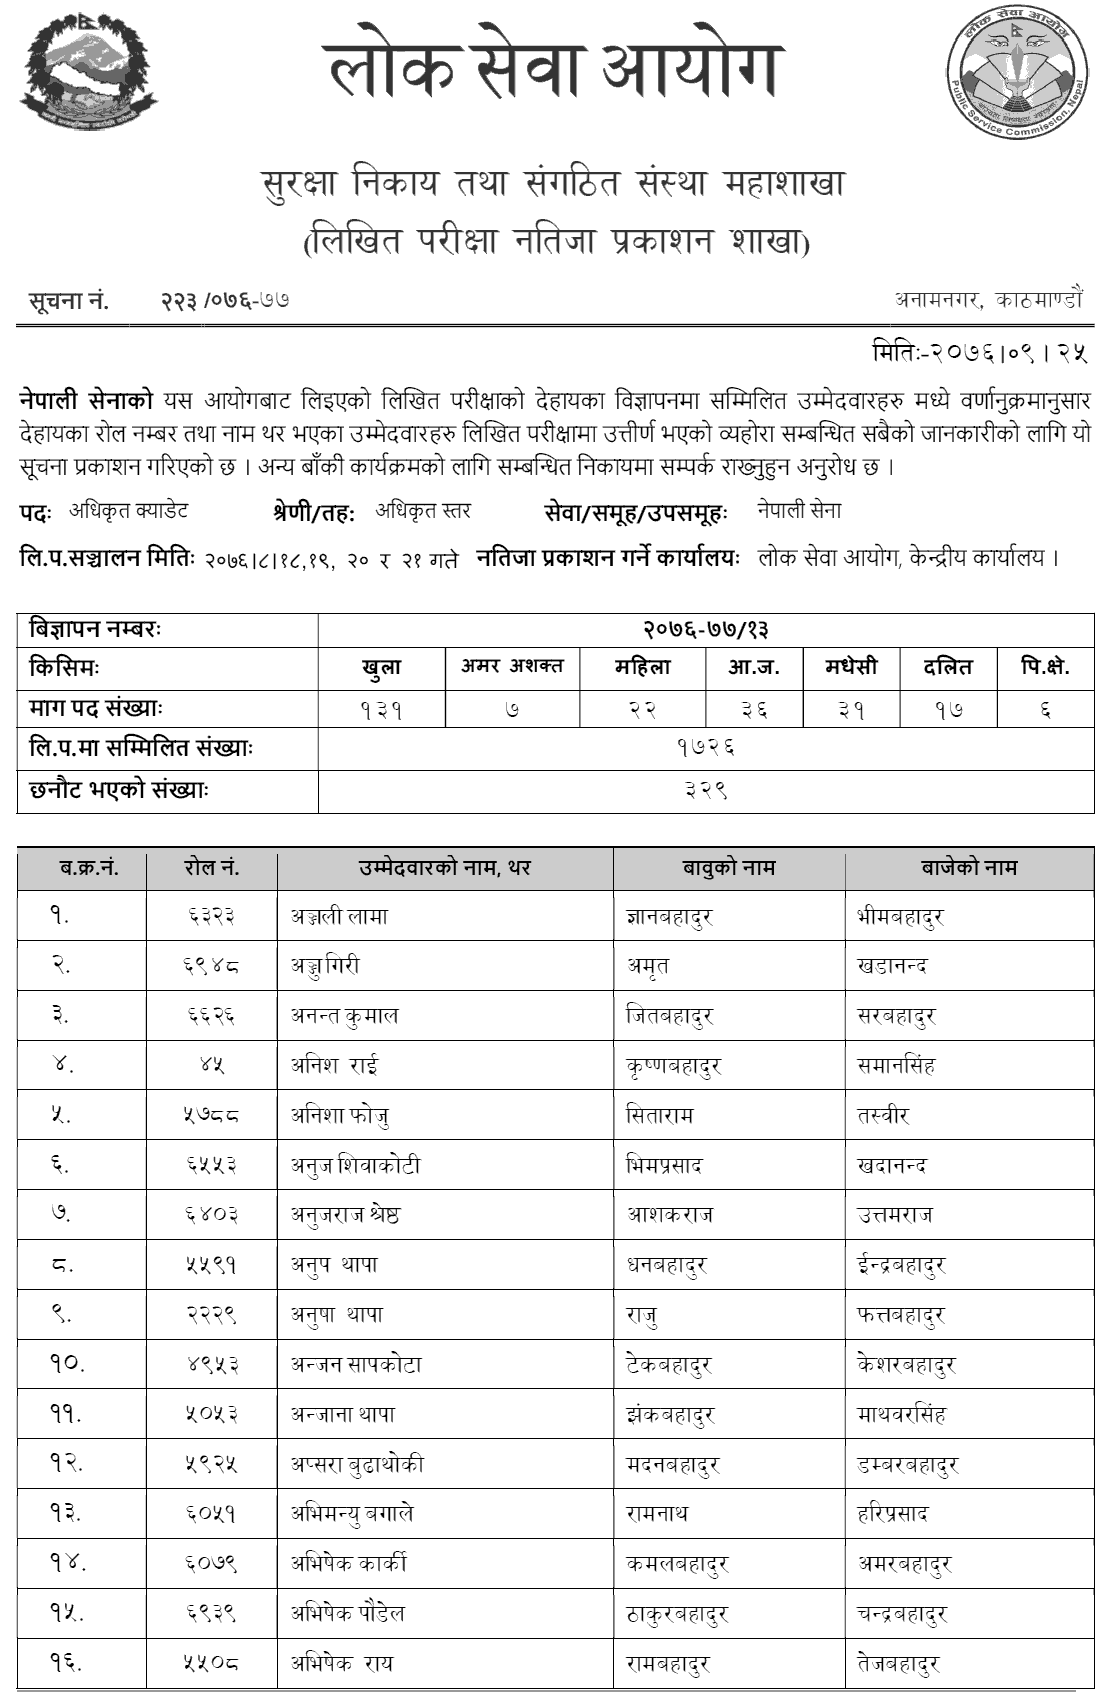 Nepal Army Officer Cadet written Exam Result 2076